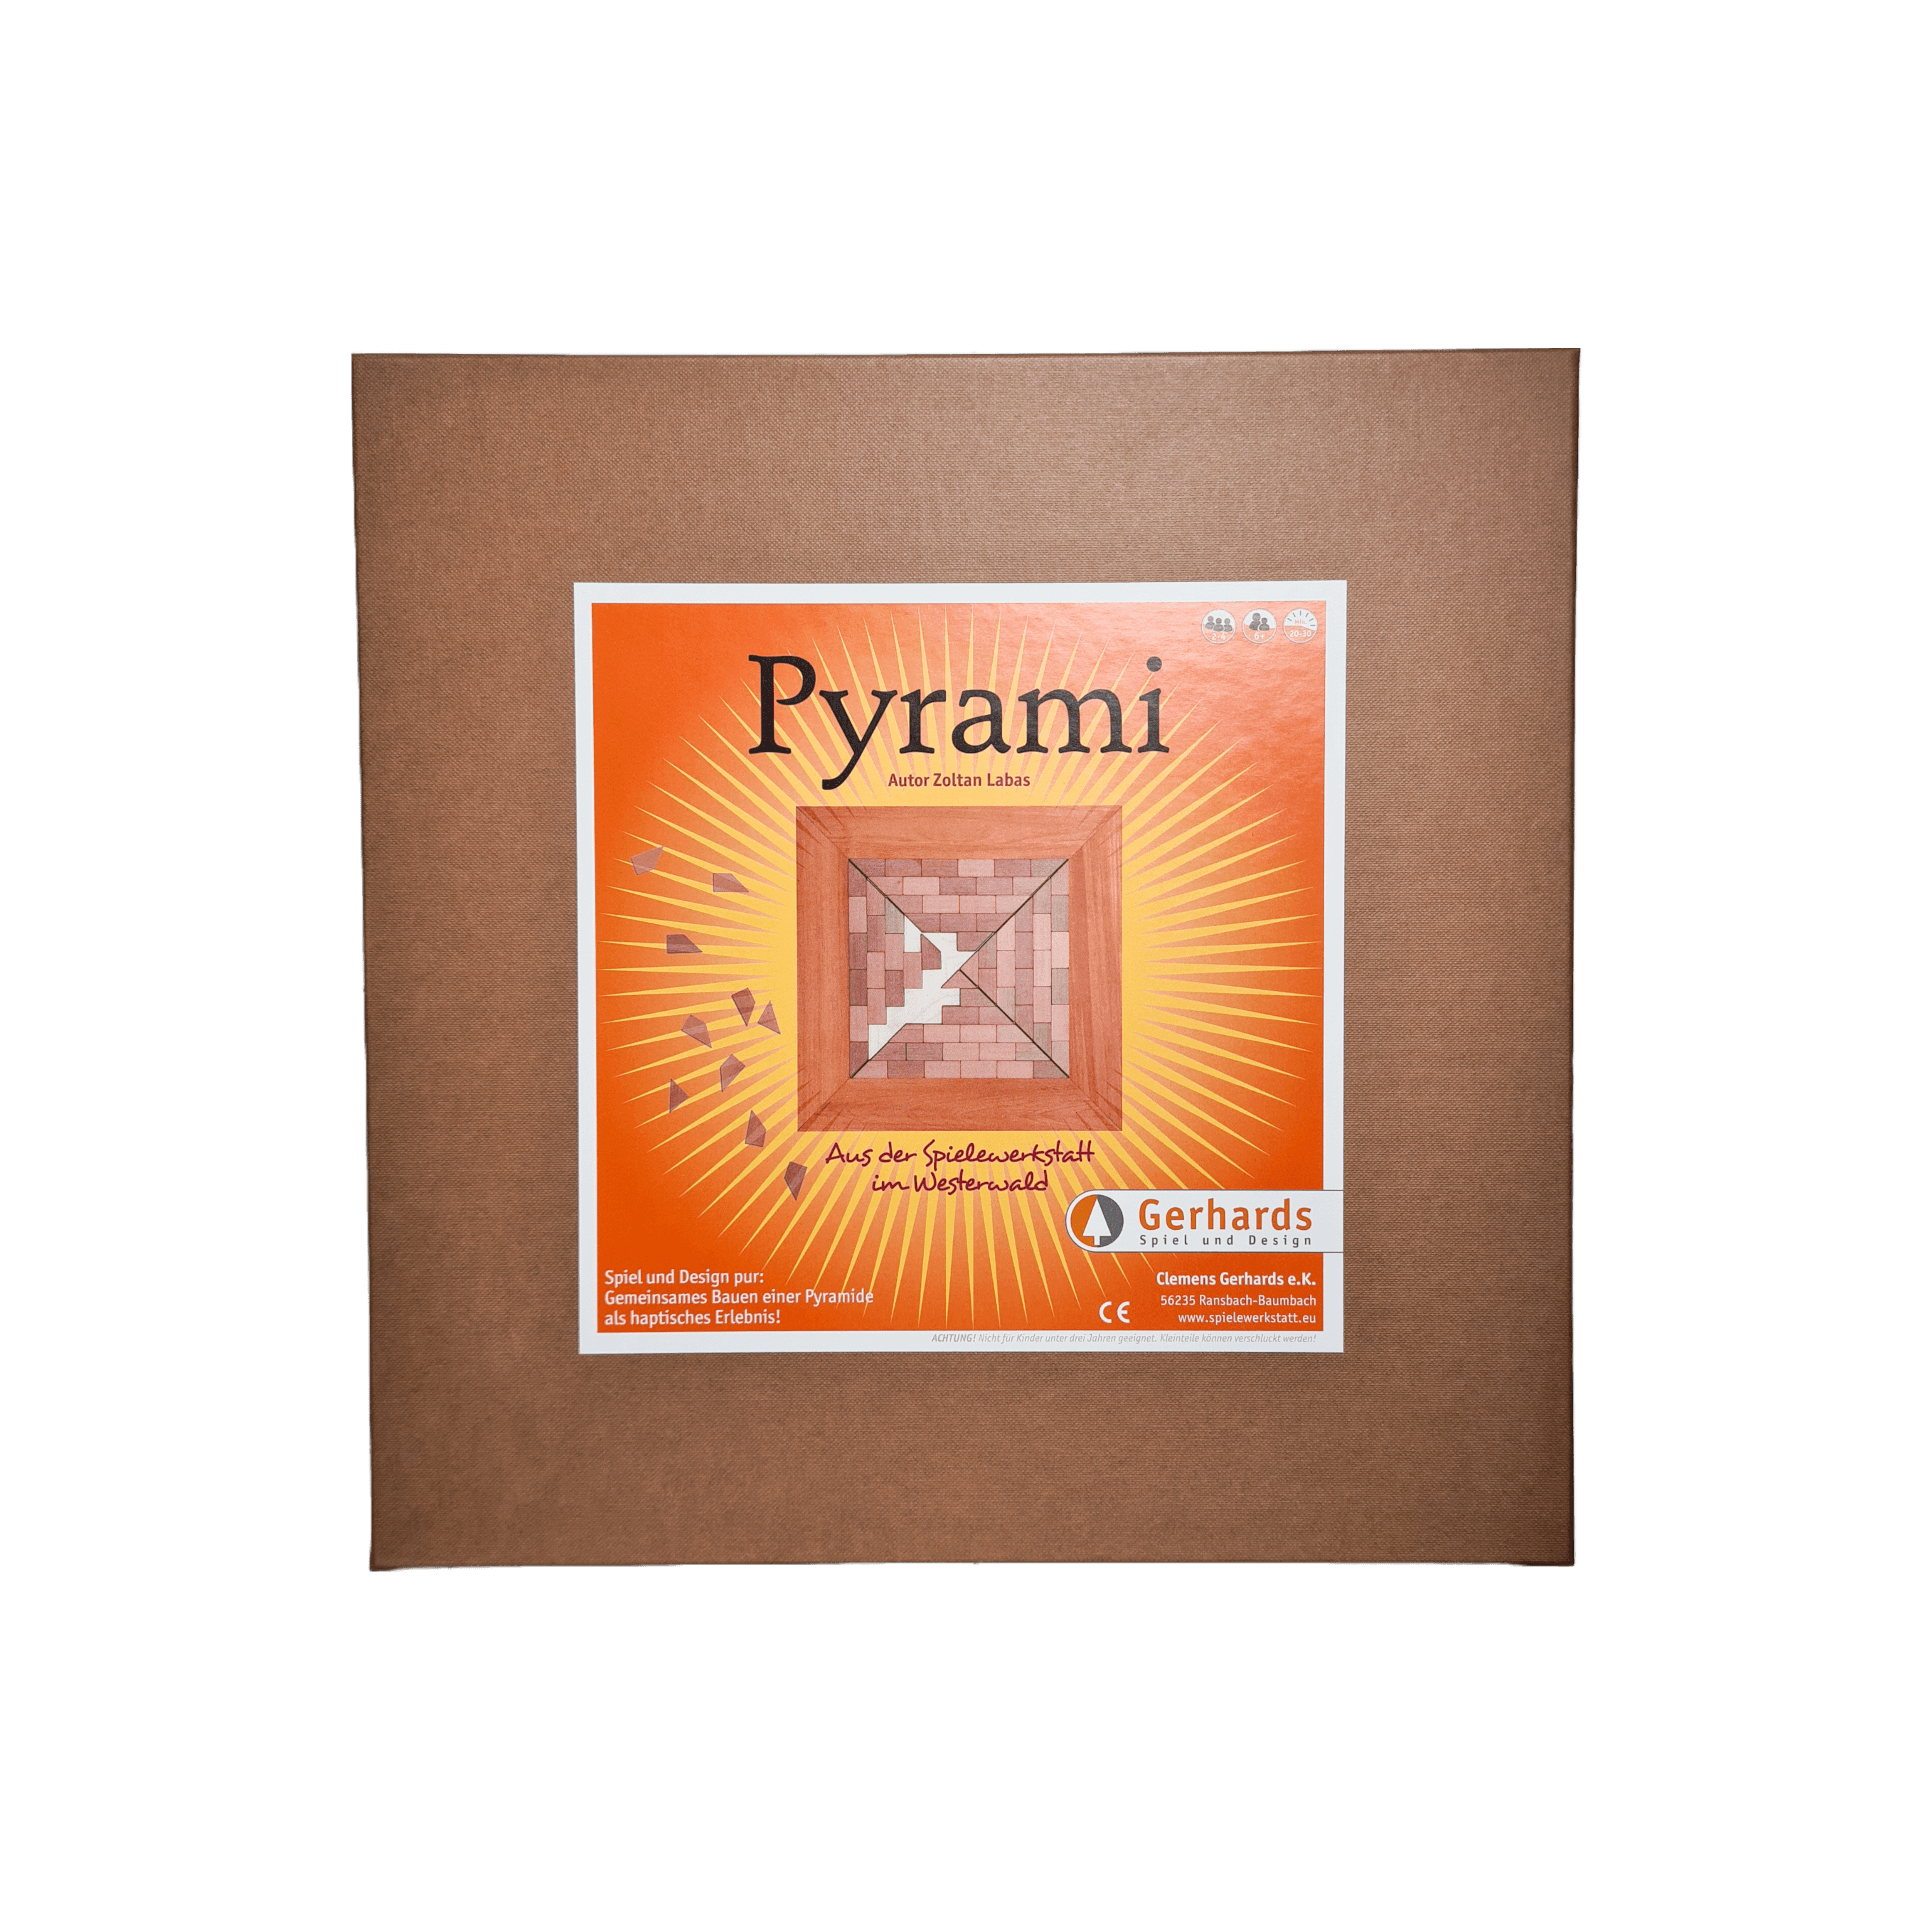 Pyrami